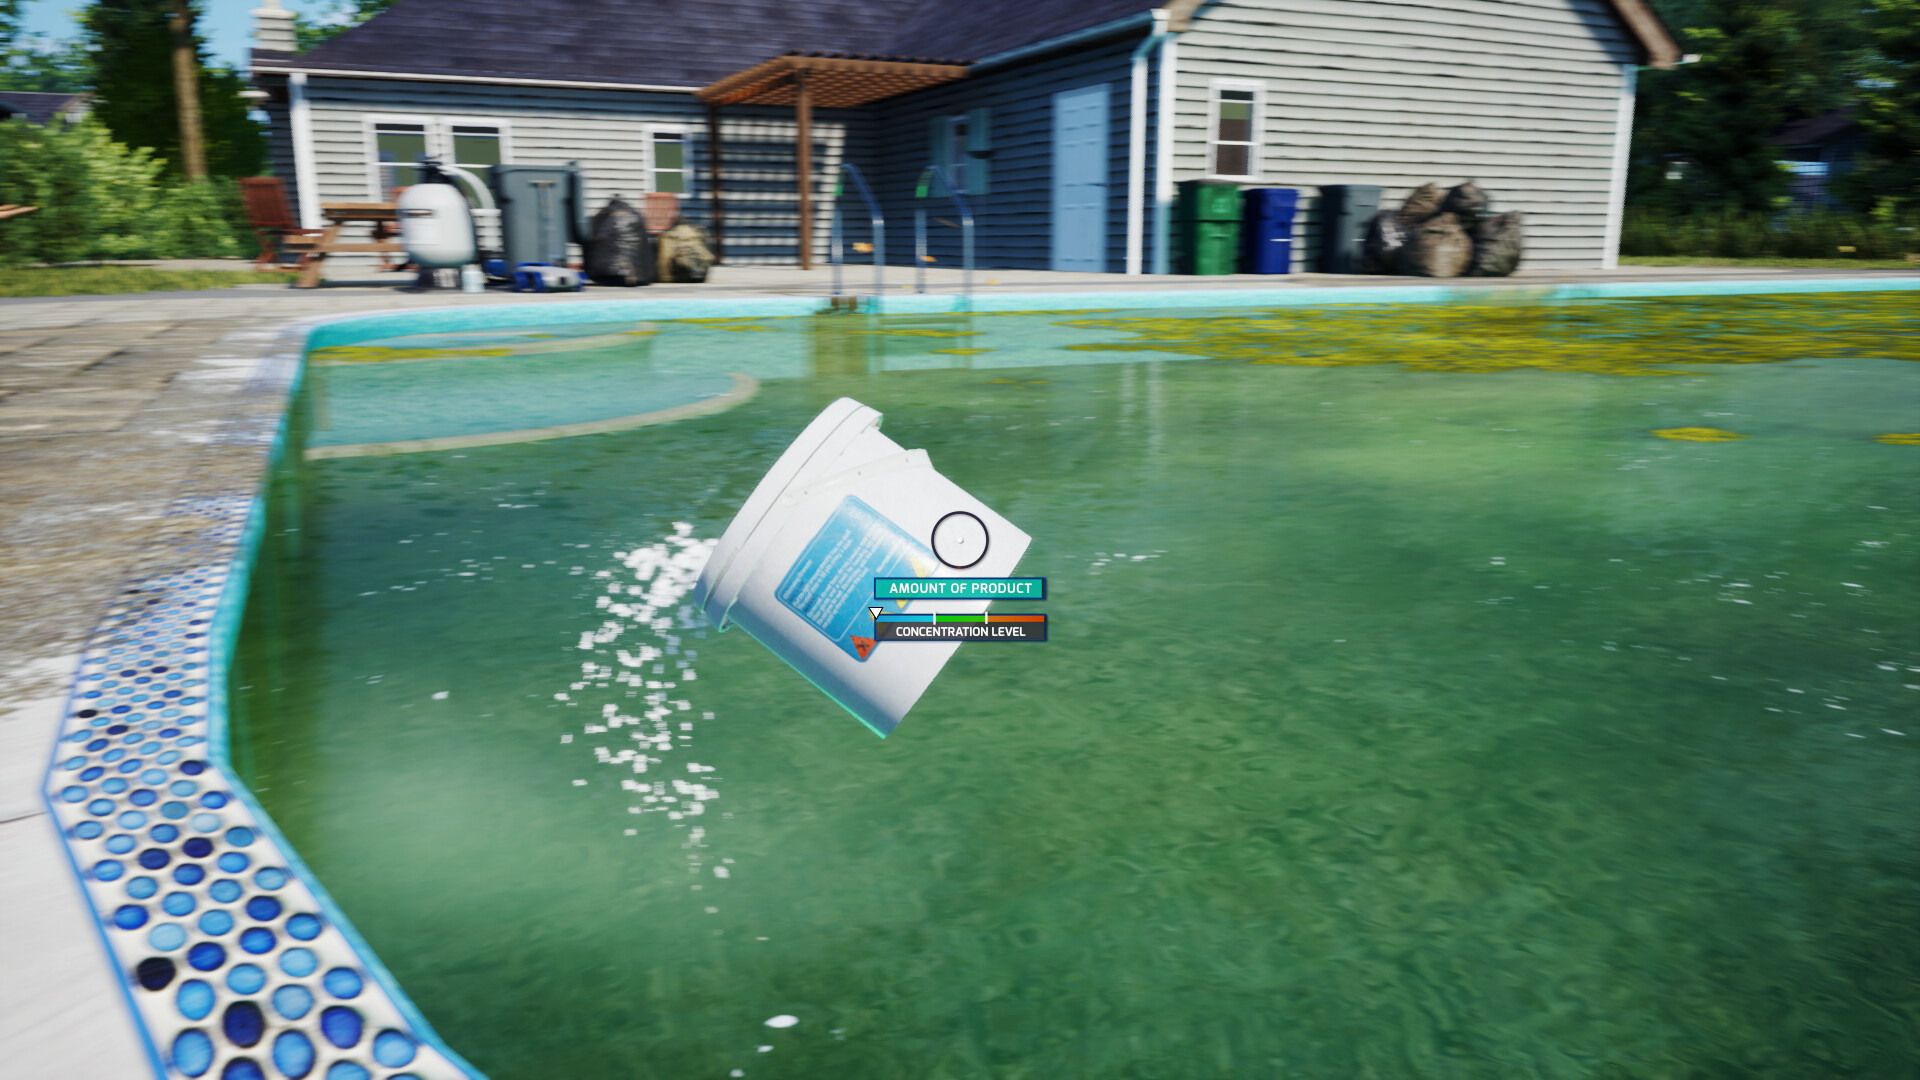 Pool Cleaning Simulator - screenshot 5